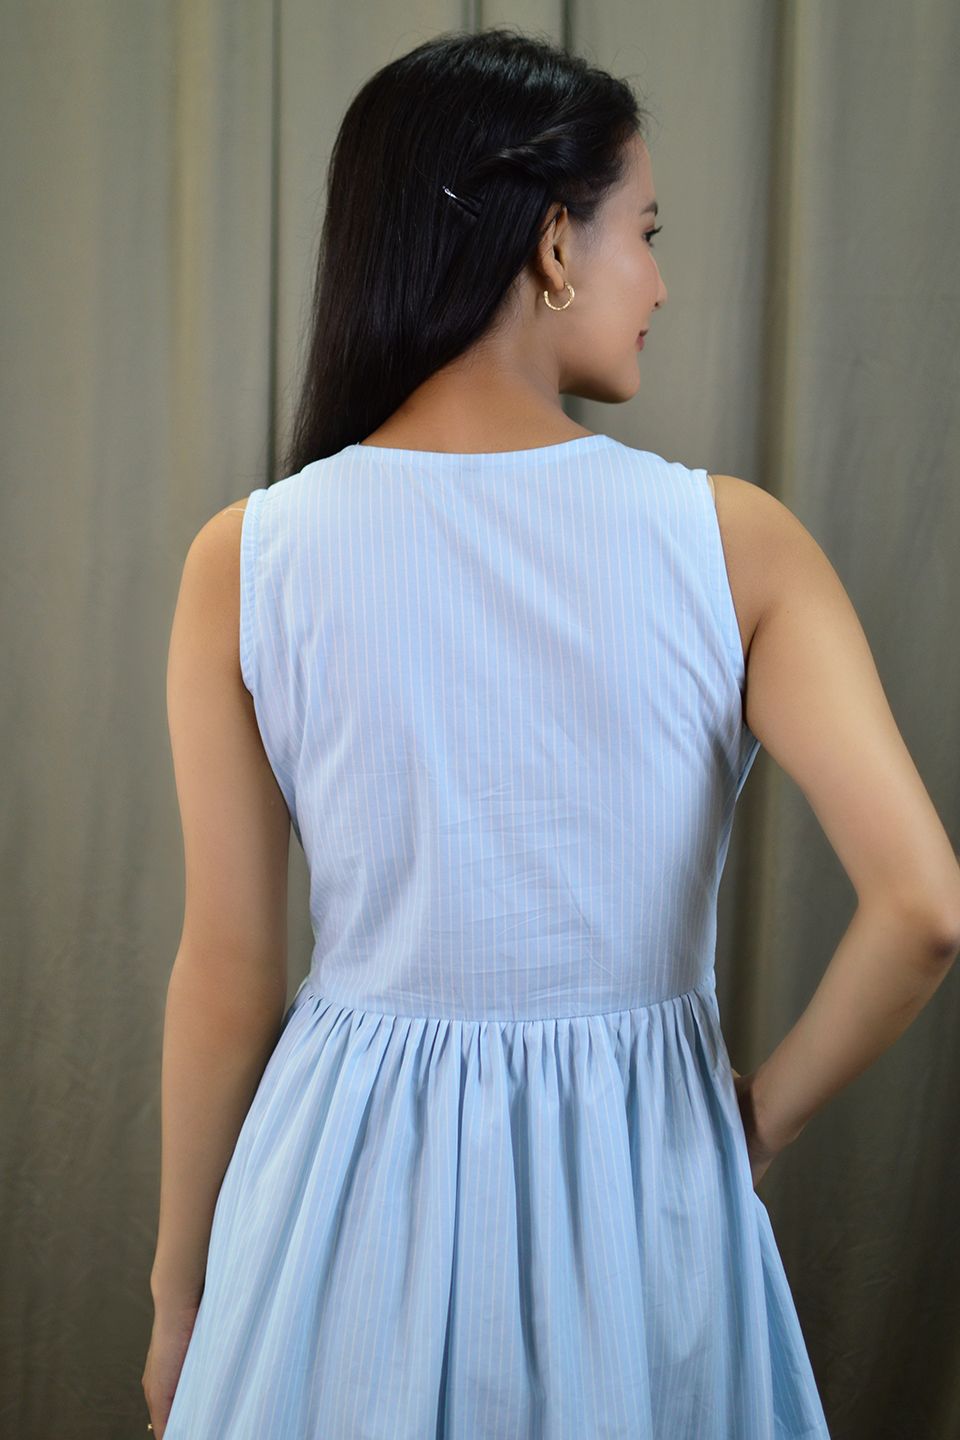 100% Cotton Mini Blue Dress